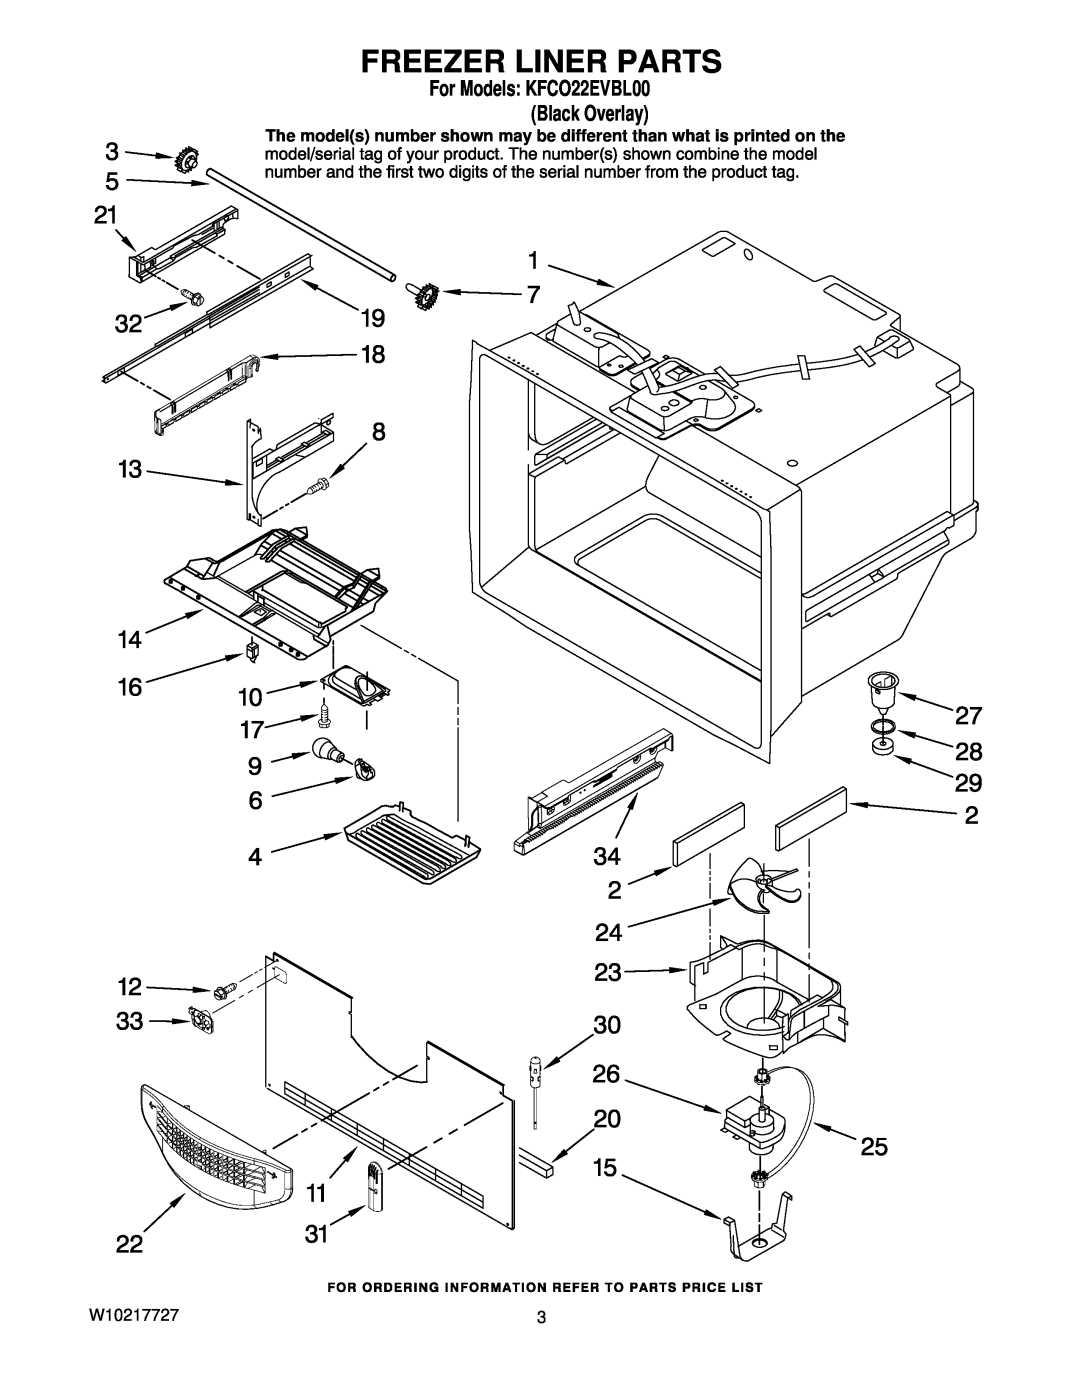 KitchenAid manual Freezer Liner Parts, For Models KFCO22EVBL00 Black Overlay, W10217727 